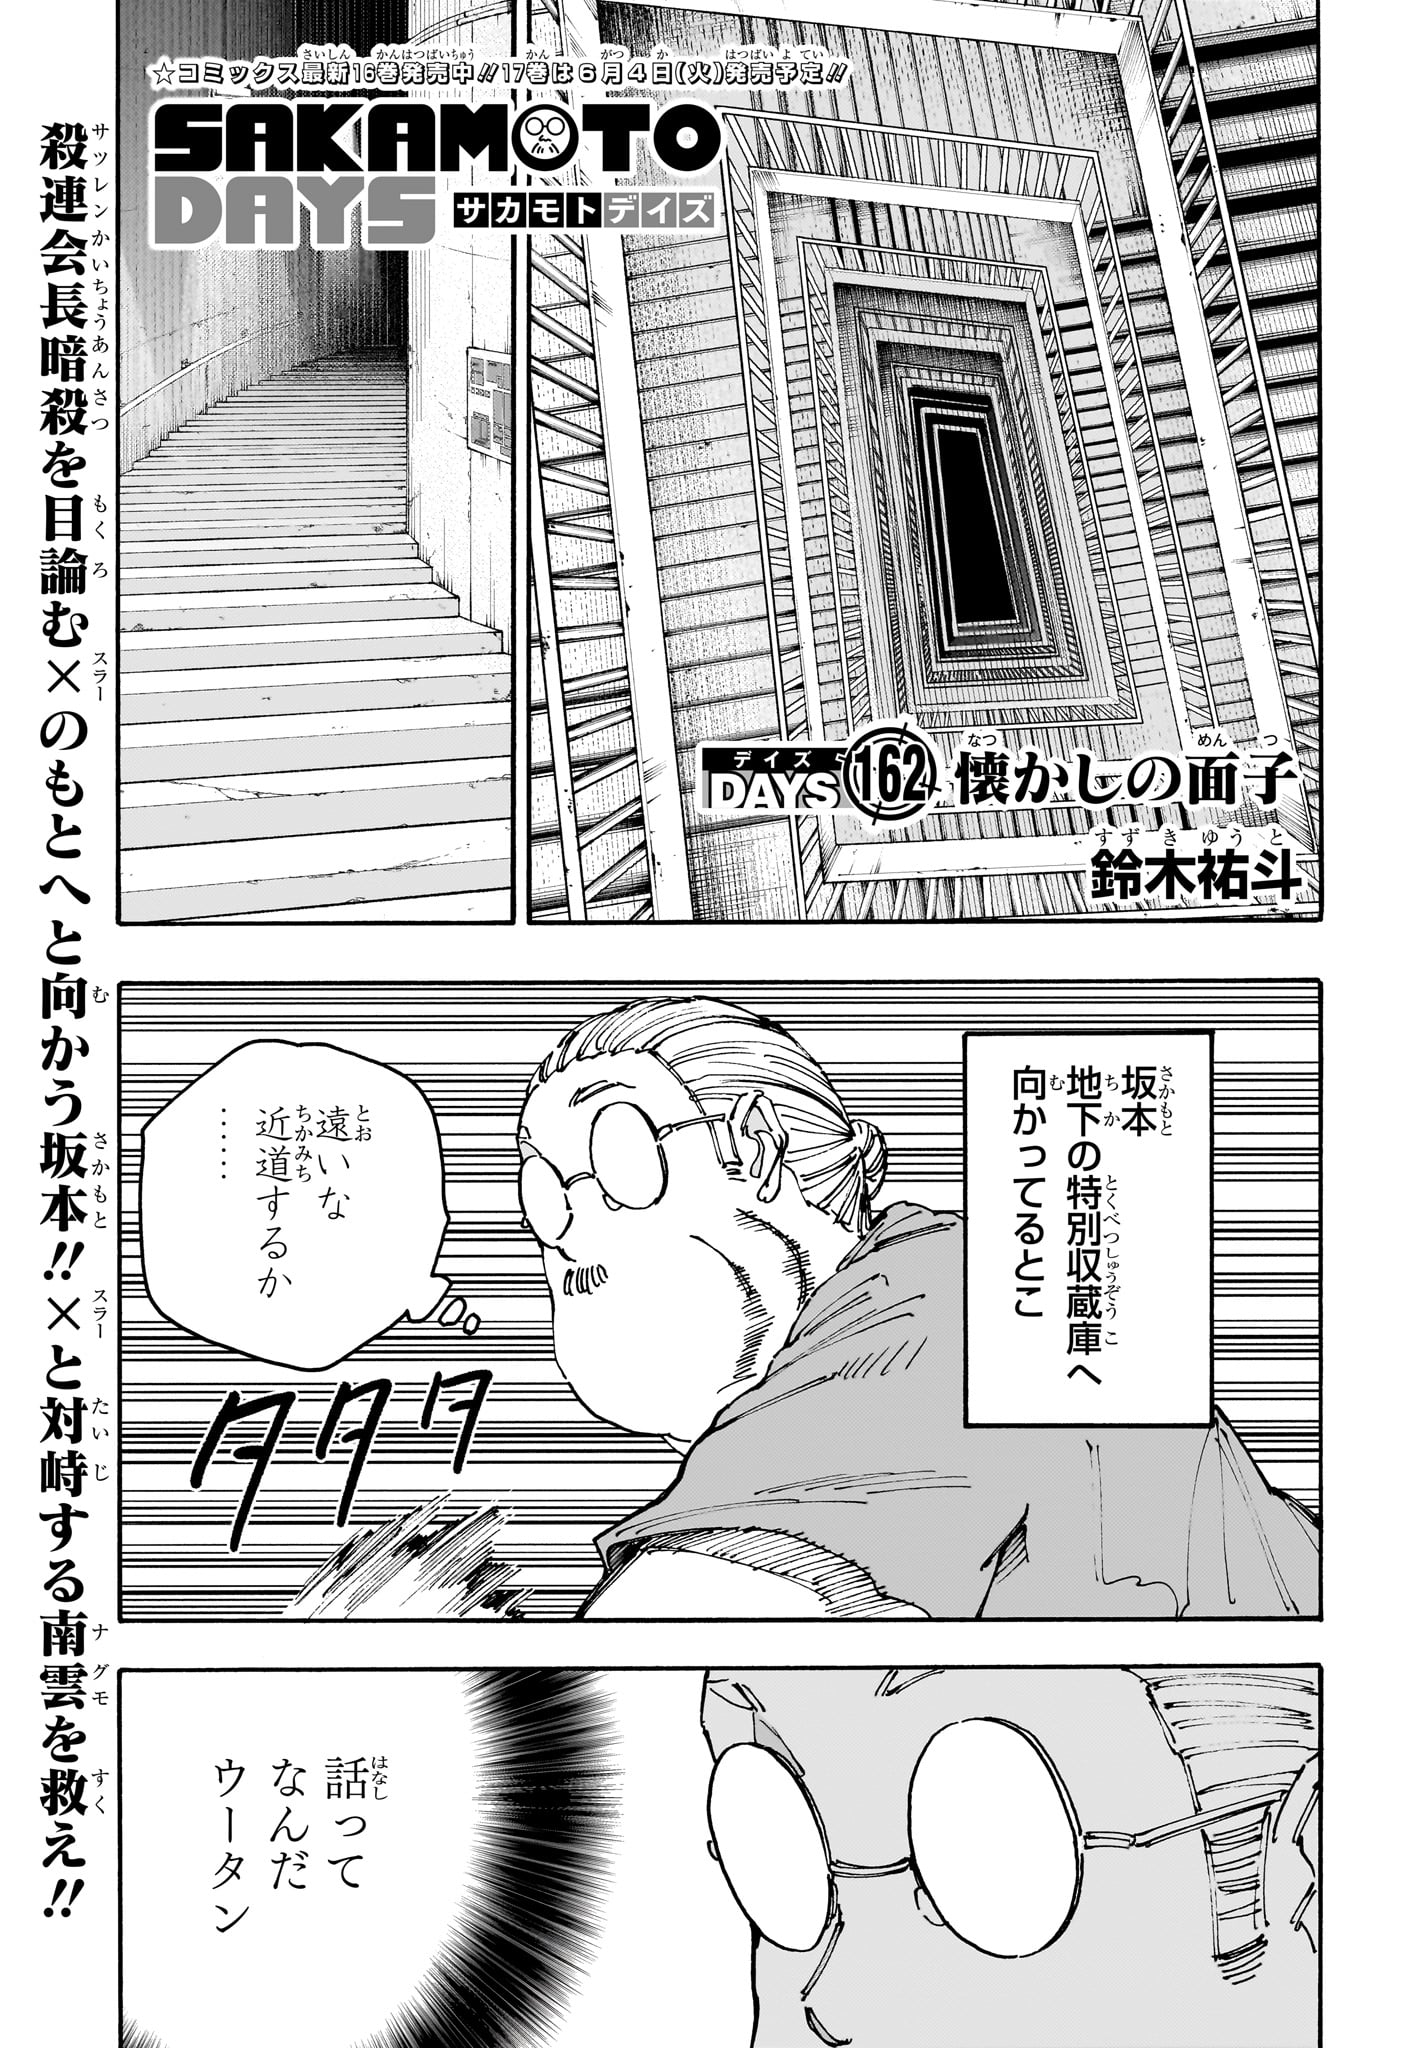 Sakamoto Days - Chapter 162 - Page 1